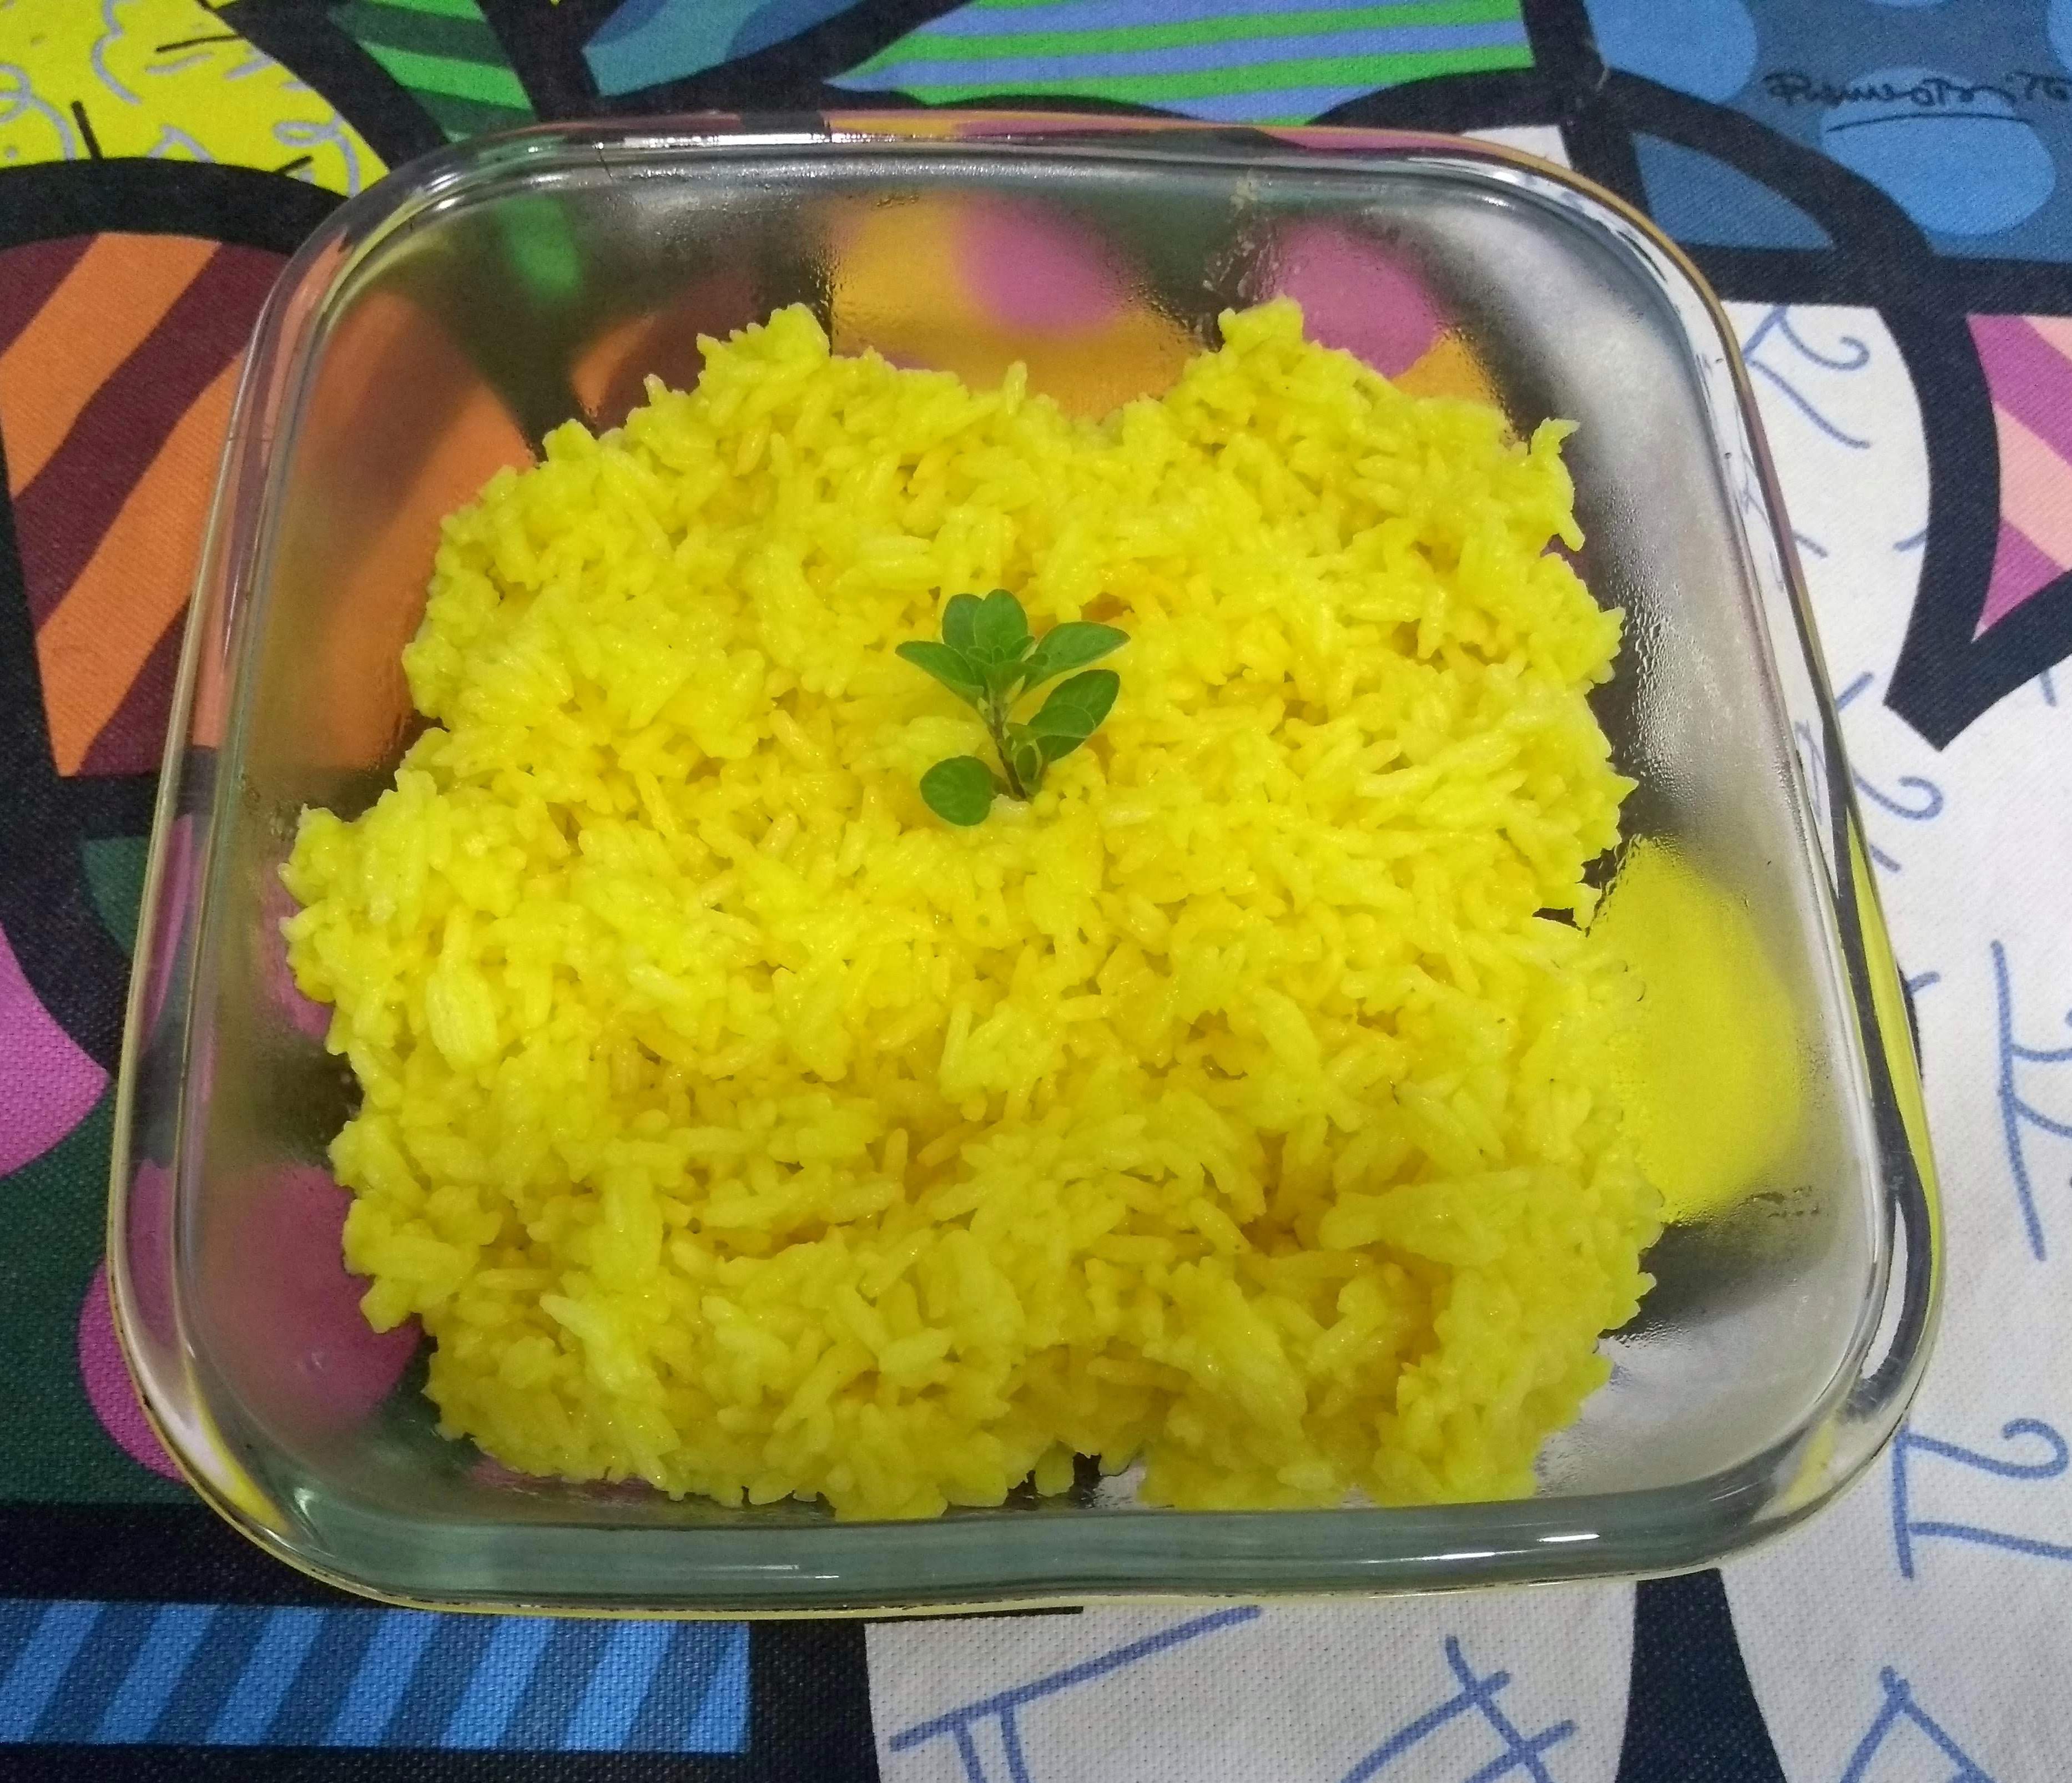 arroz com açafrão